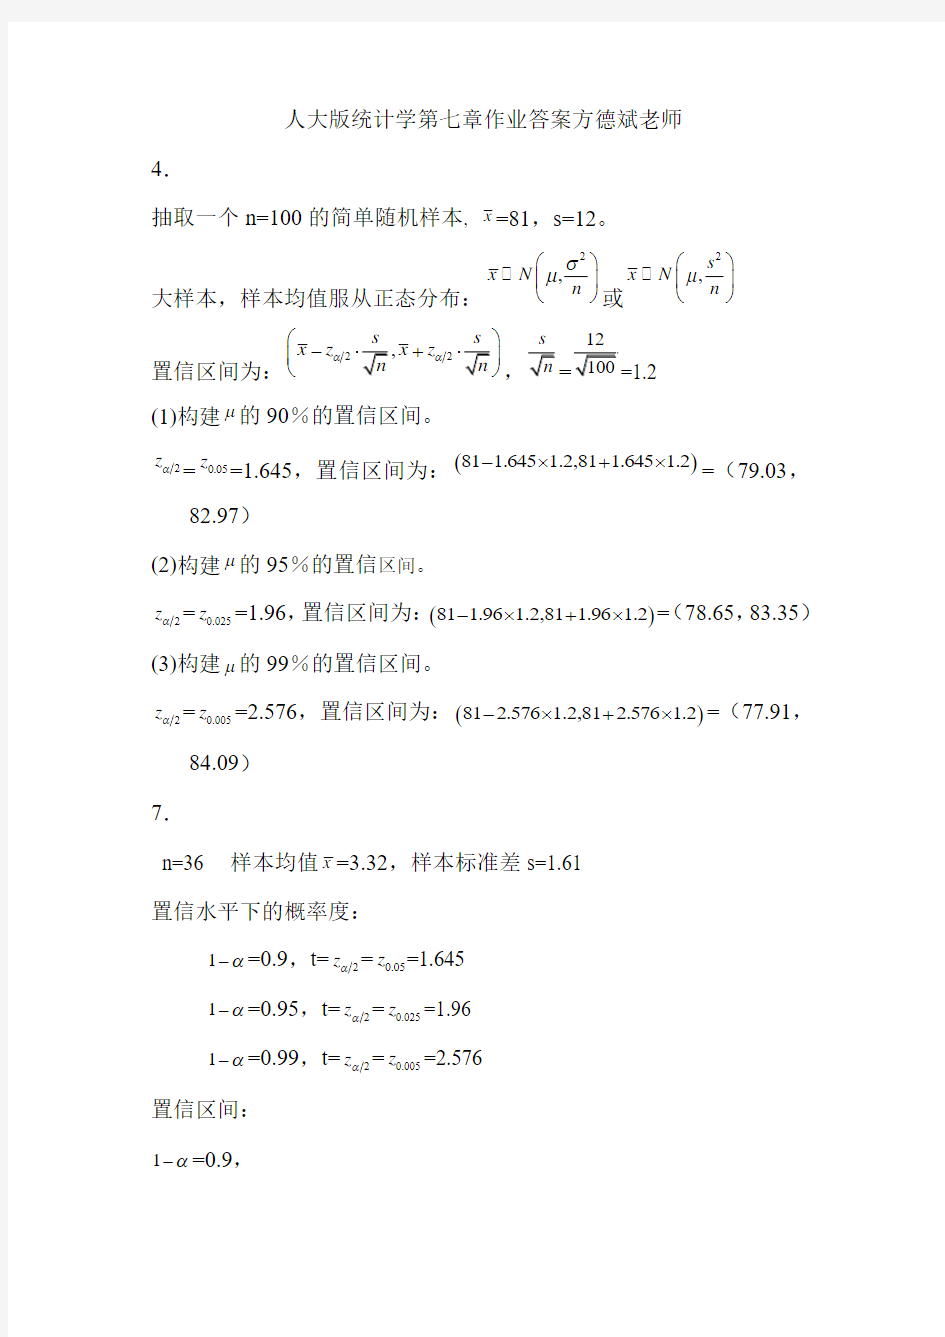 贾俊平第四版统计学第七章作业答案方德斌老师